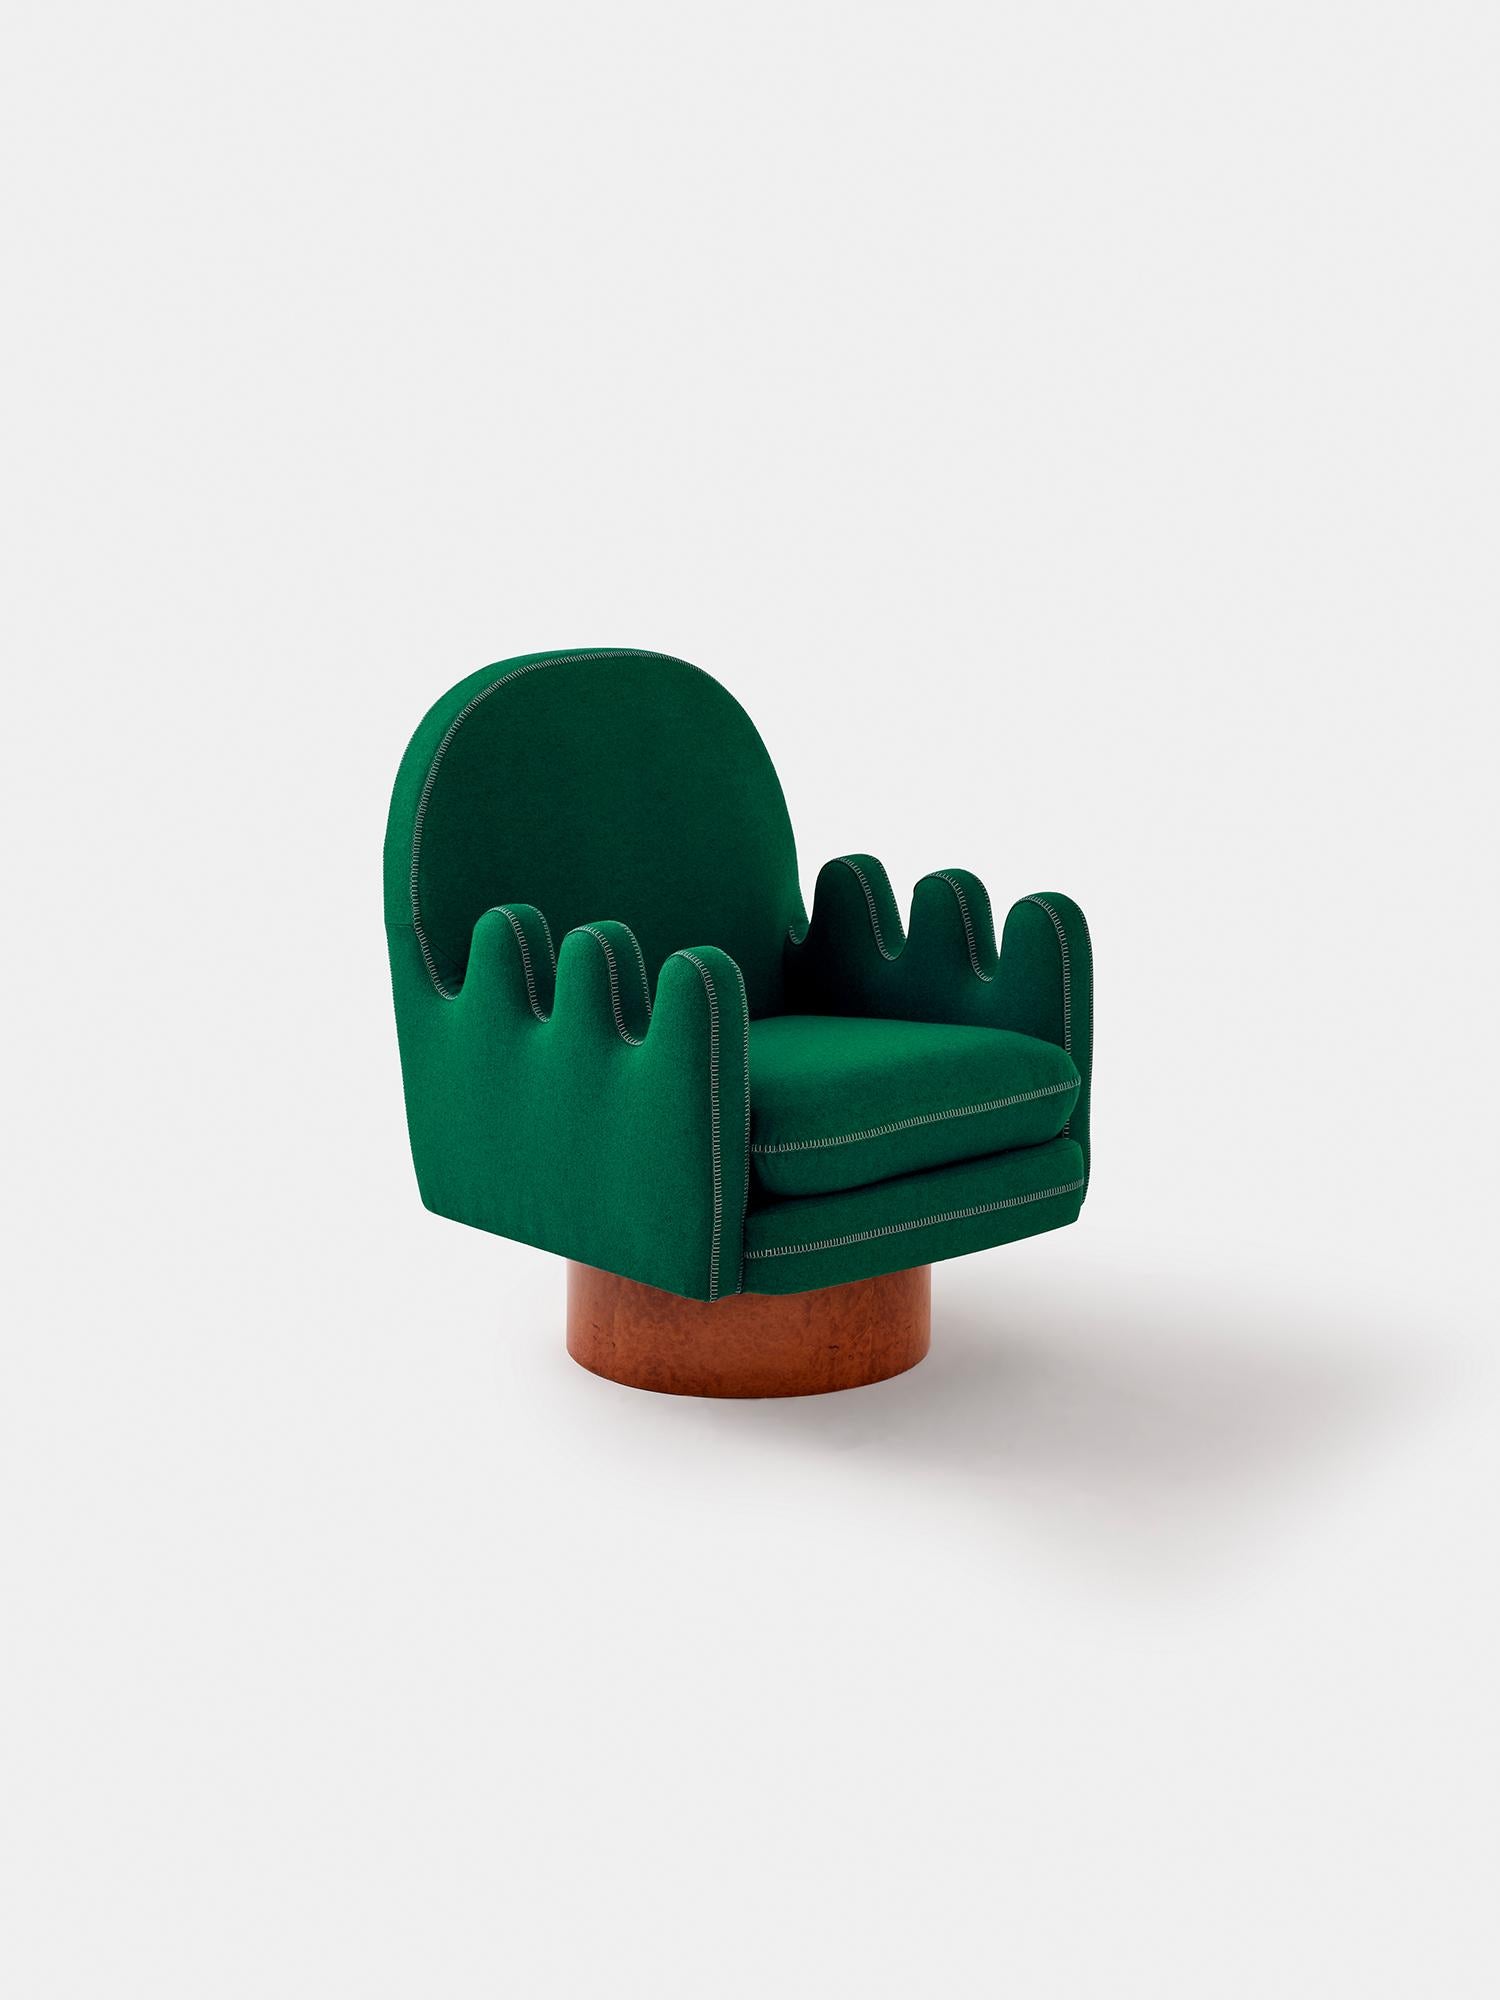 SEMO est le fauteuil parfait pour les personnes qui s'assoient sur le côté et pour celles qui aiment pivoter. Les bras épais des doigts sont parfaits pour placer vos jambes pendant que vous tournez à gauche et à droite. Semo ressemble à un gant de